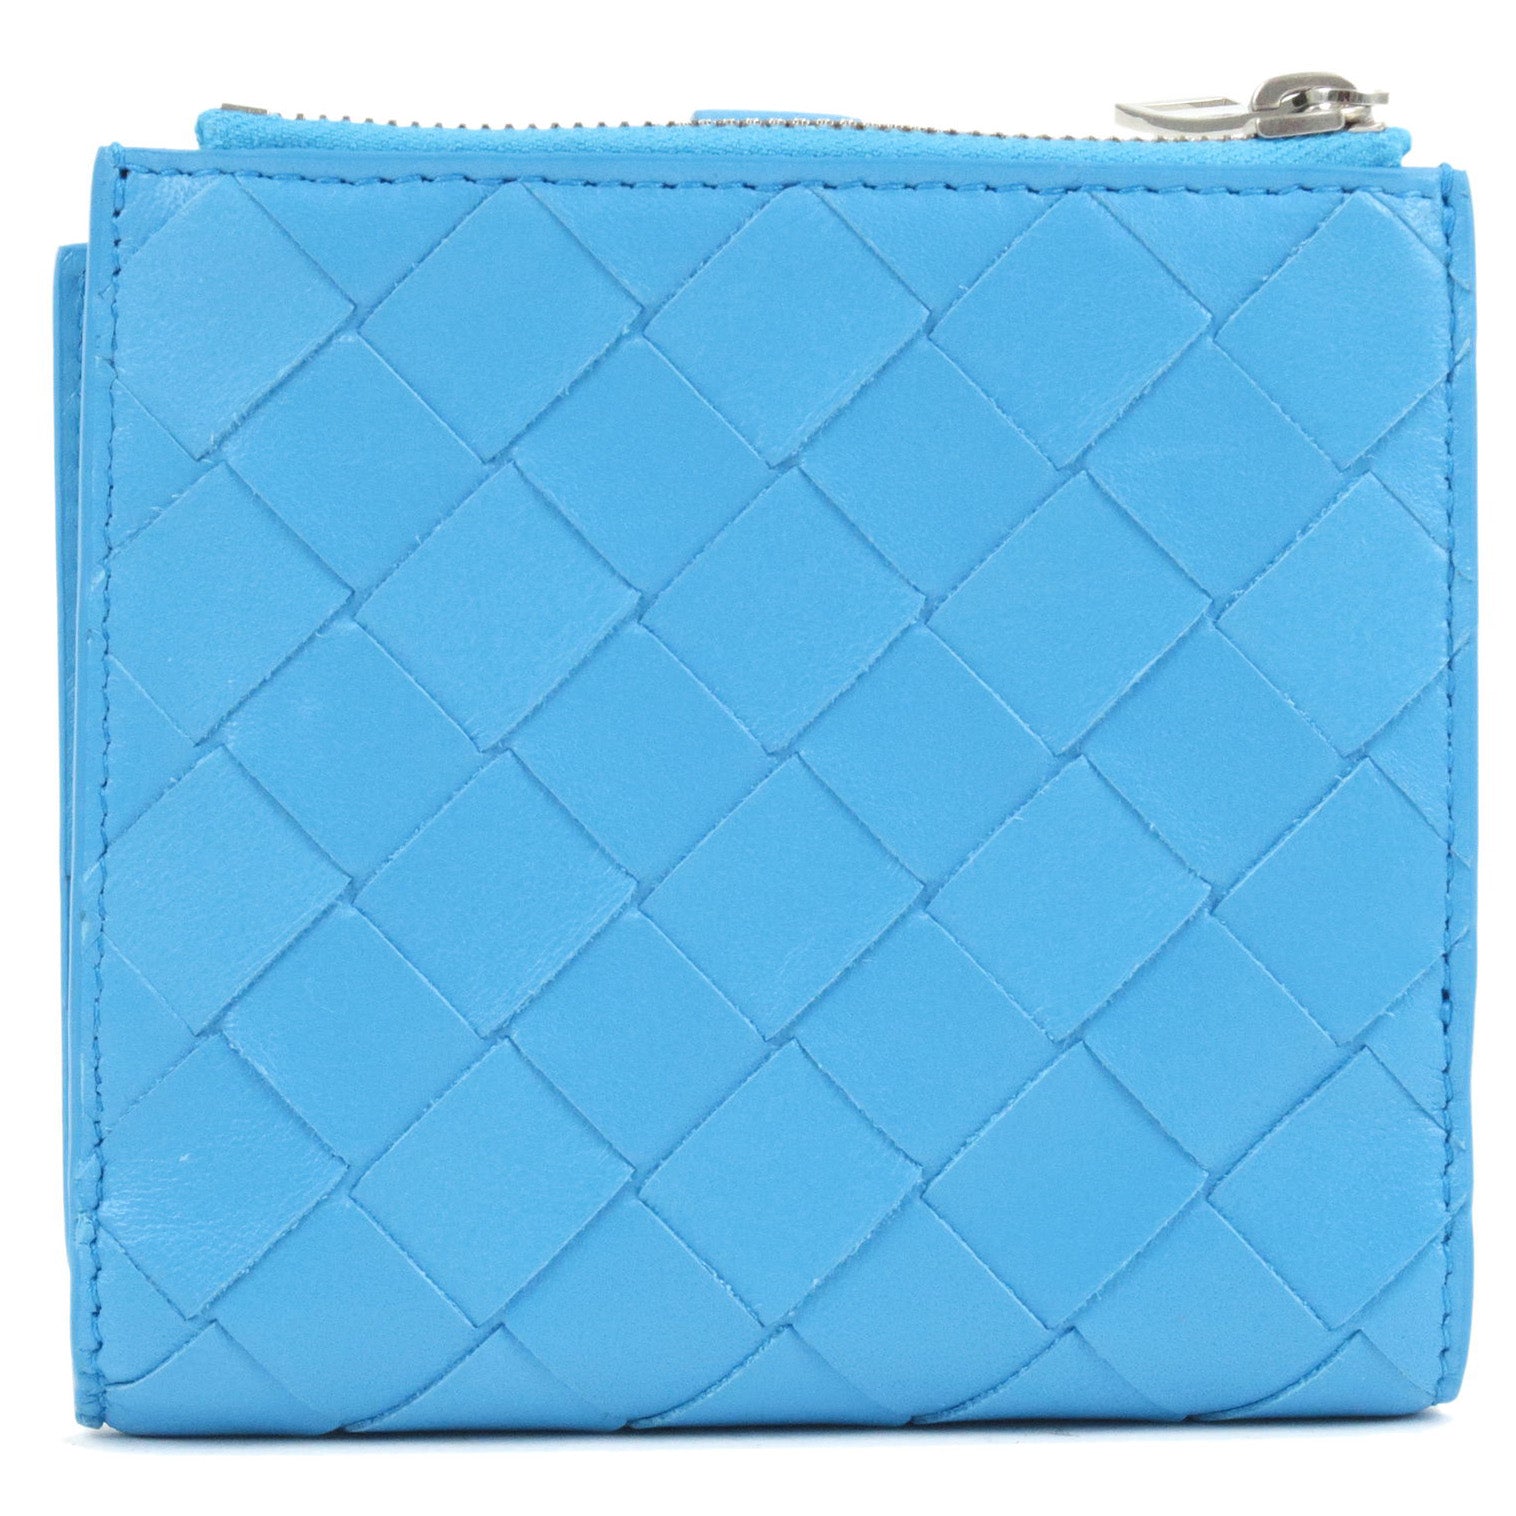 Bottega Veneta® Men's Intrecciato Bi-Fold Wallet in Deep Blue